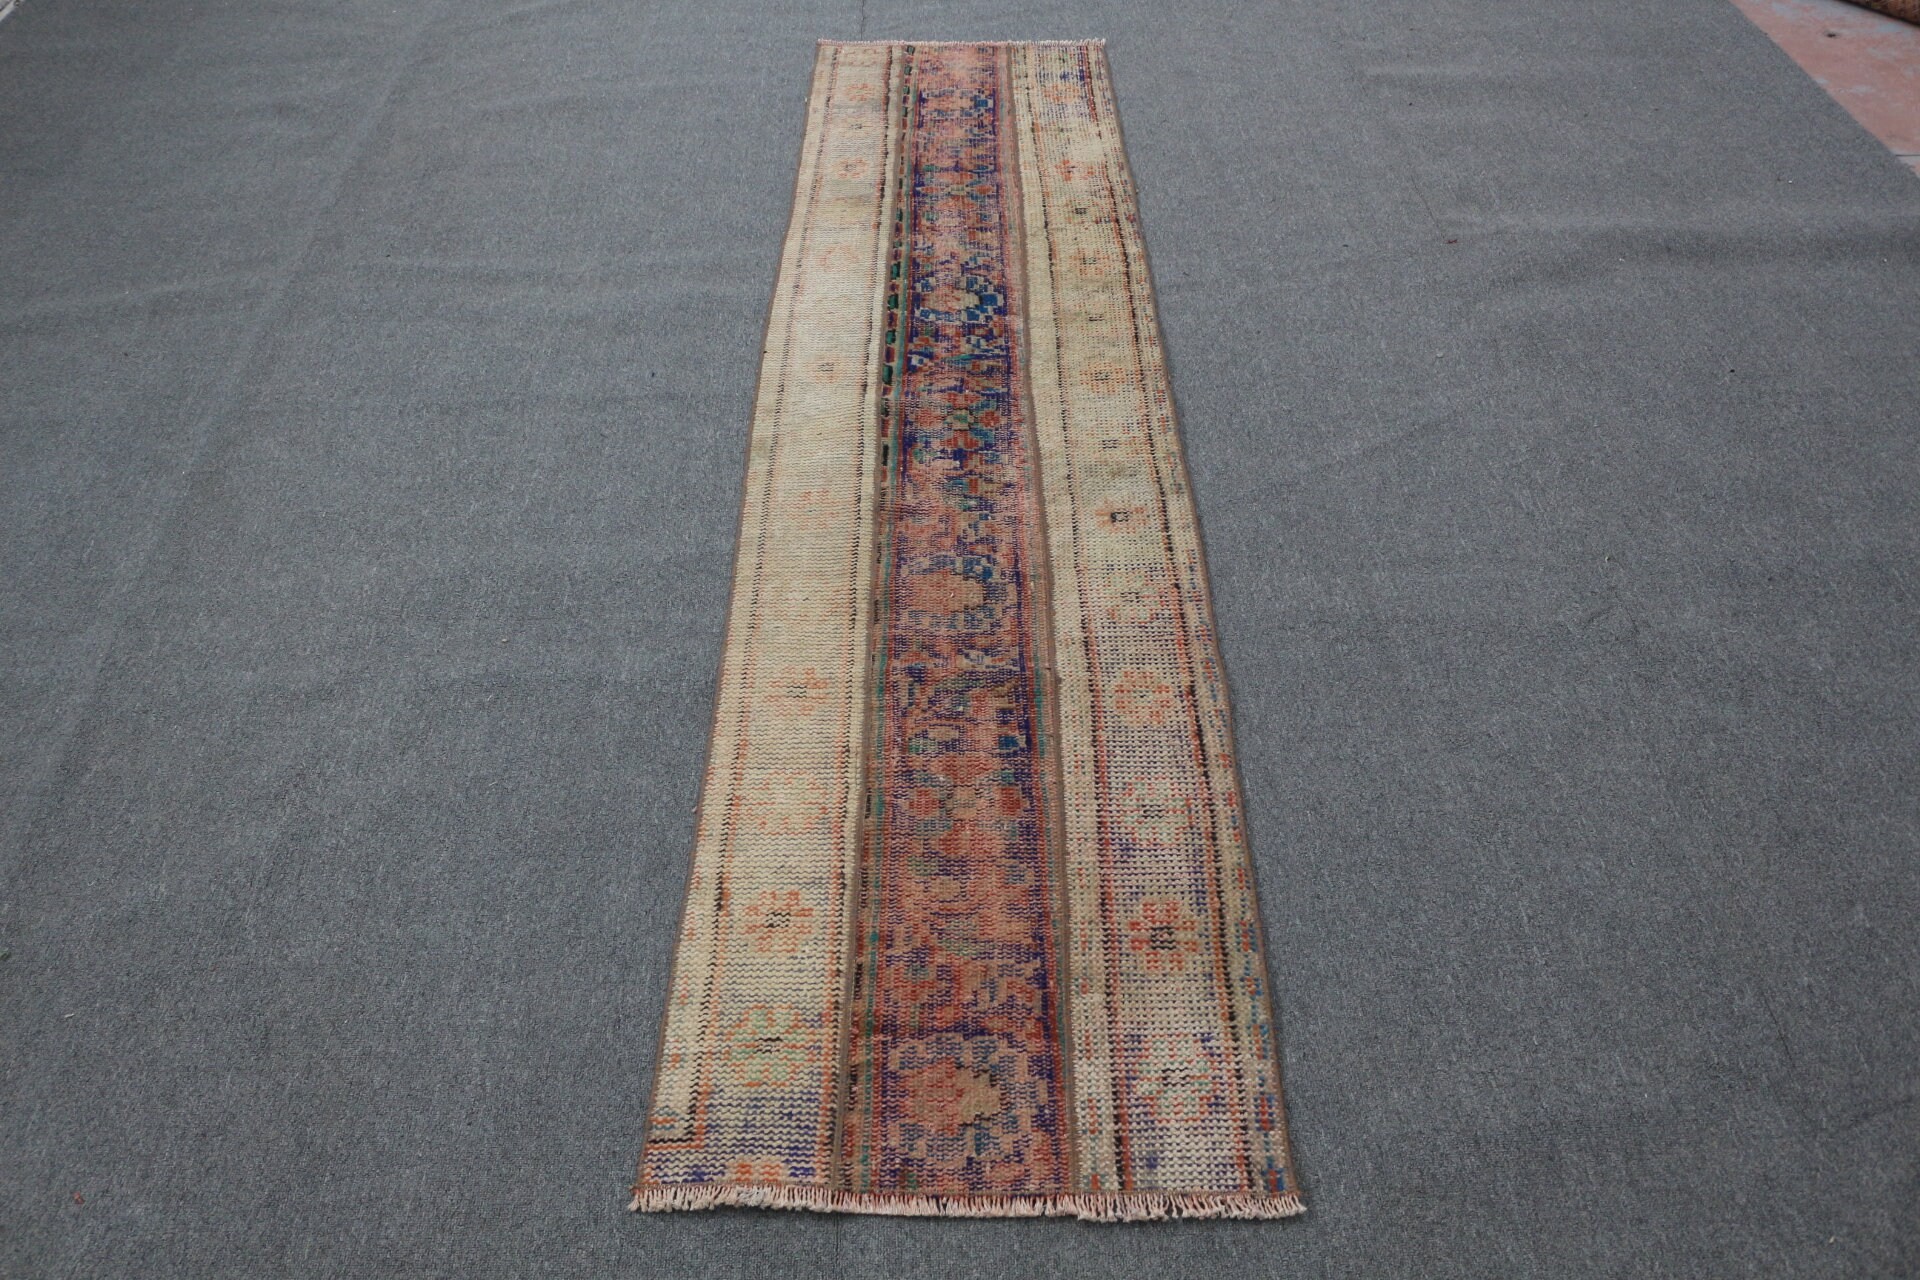 Vintage Rug, 2x8.4 ft Runner Rug, Home Decor Rug, Turkish Rug, Beige Floor Rug, Stair Rugs, Oriental Rug, Hallway Rug, Rugs for Stair